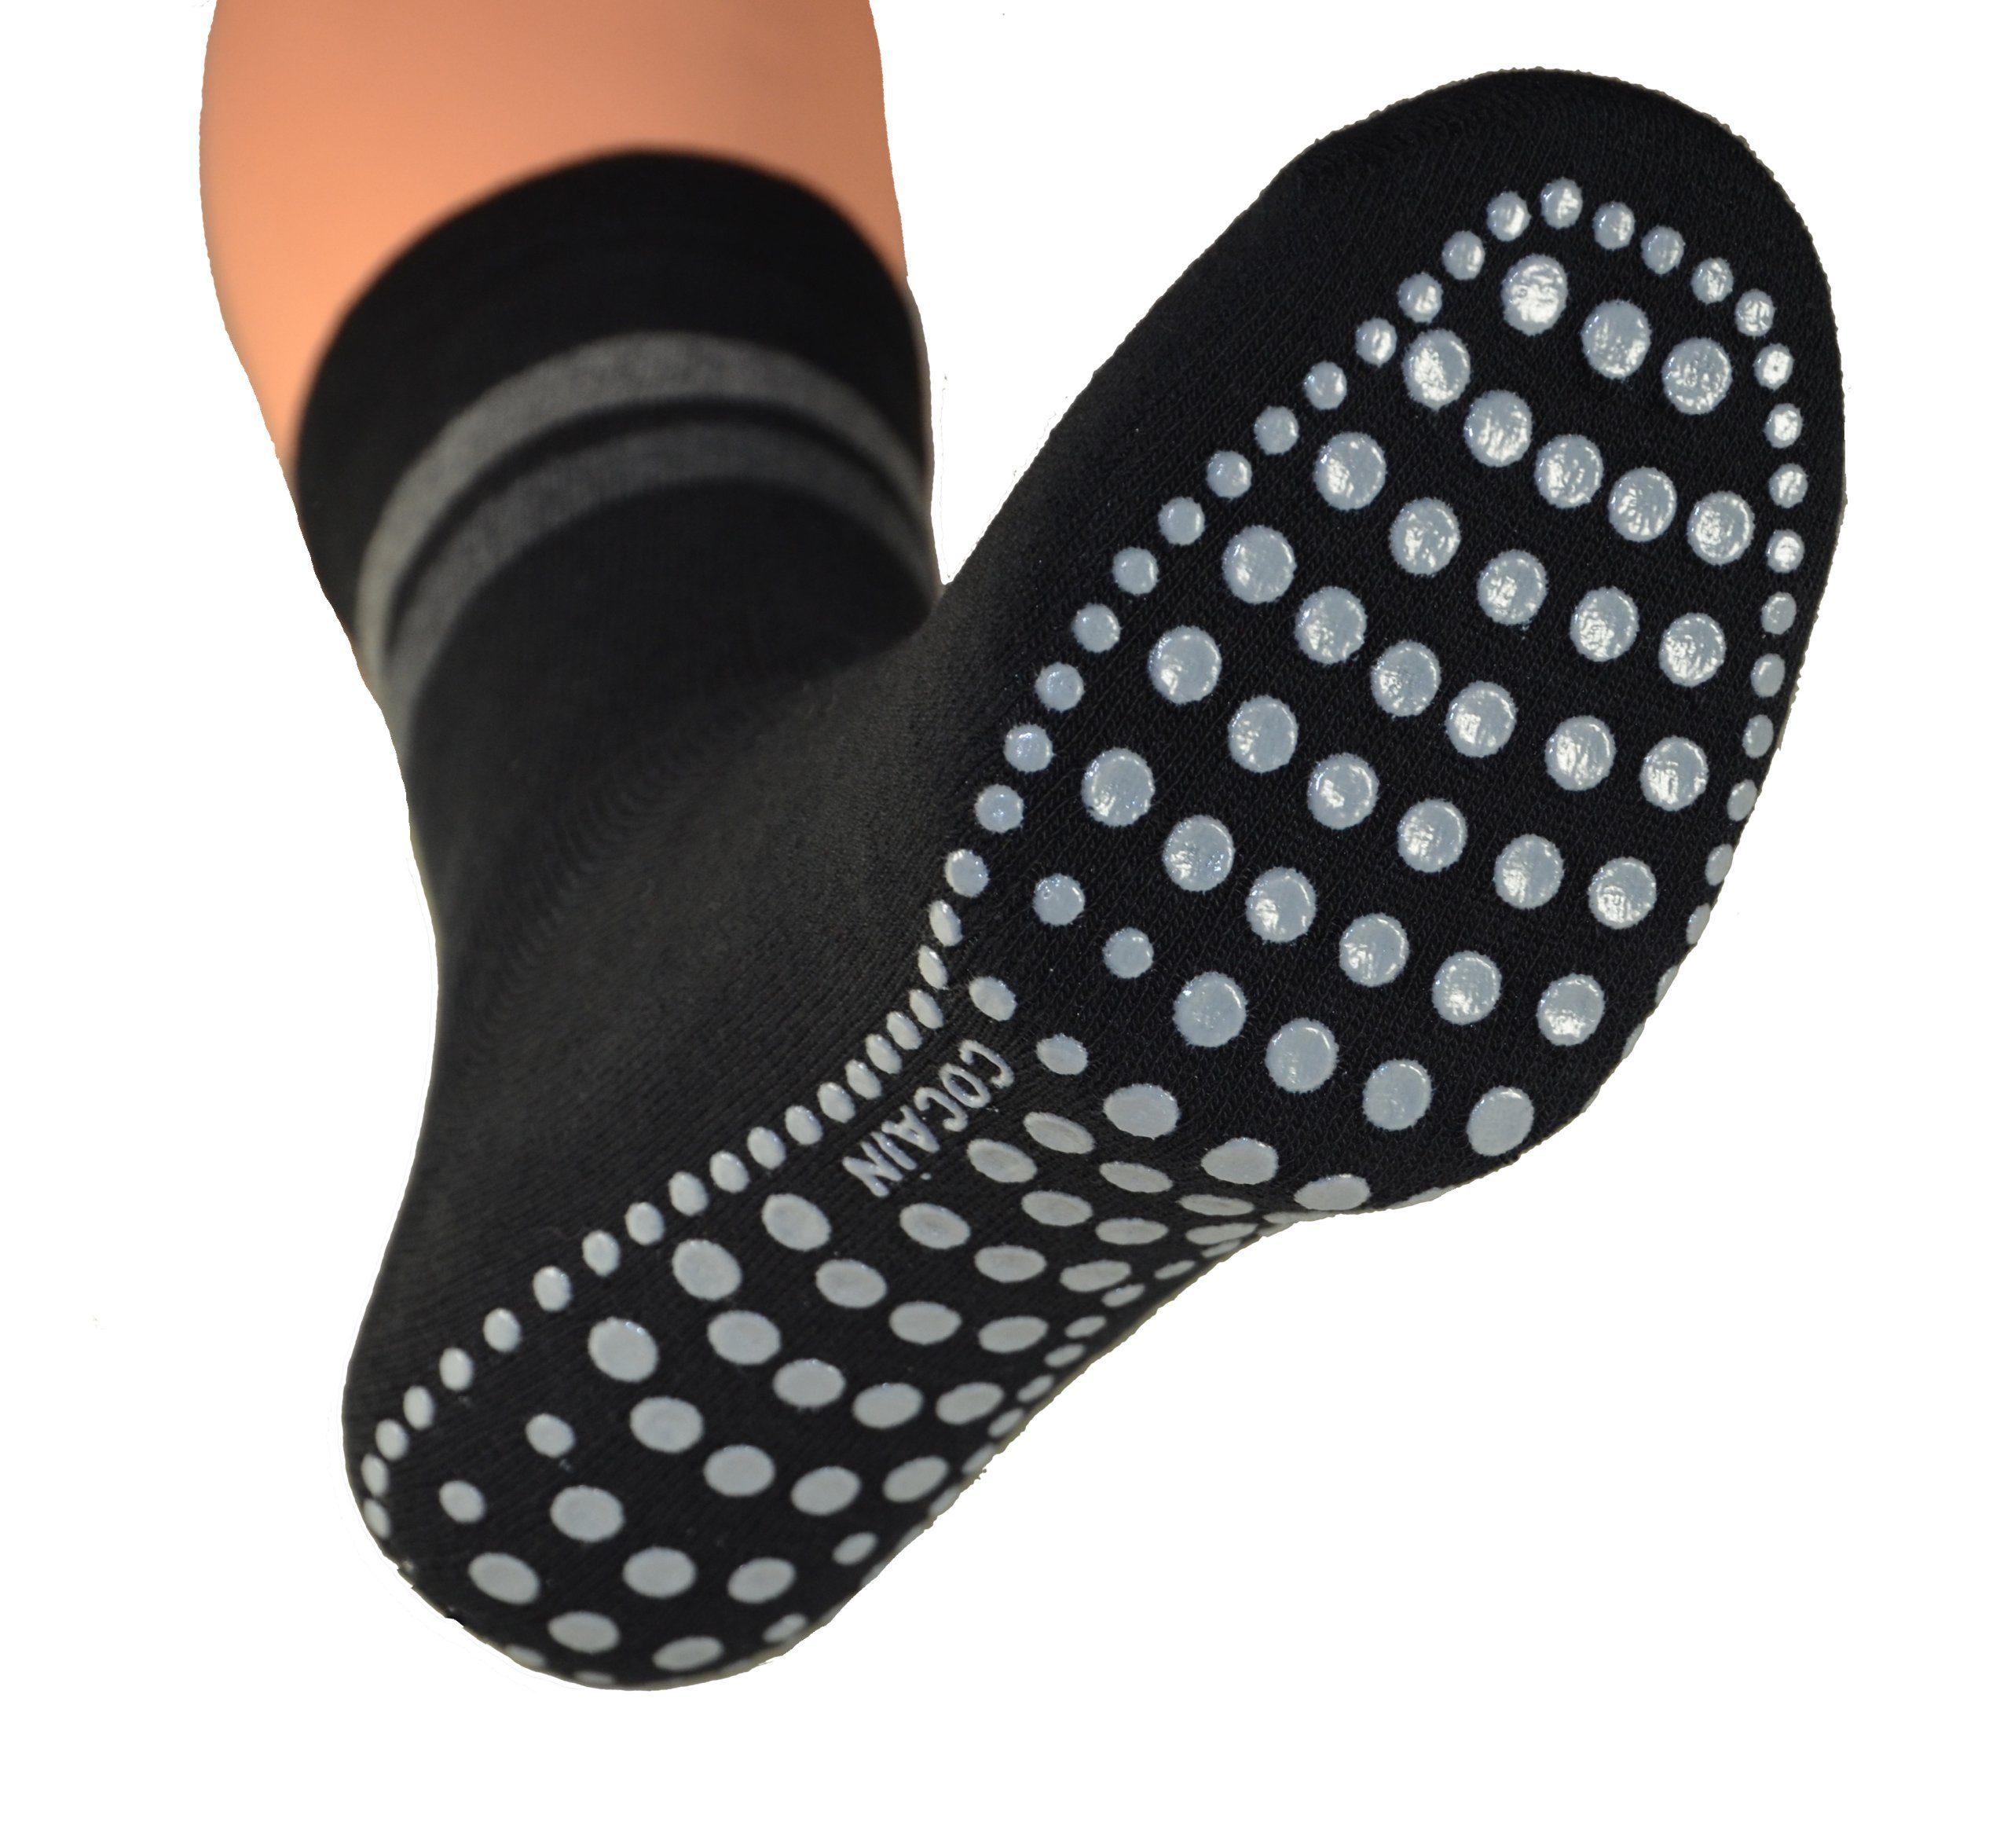 ABS Paar Damen Cocain Socken für in Übergröße underwear auch Herren Stoppersocken - ABS-Socken & grau-schwarz je 2 (4-Paar)